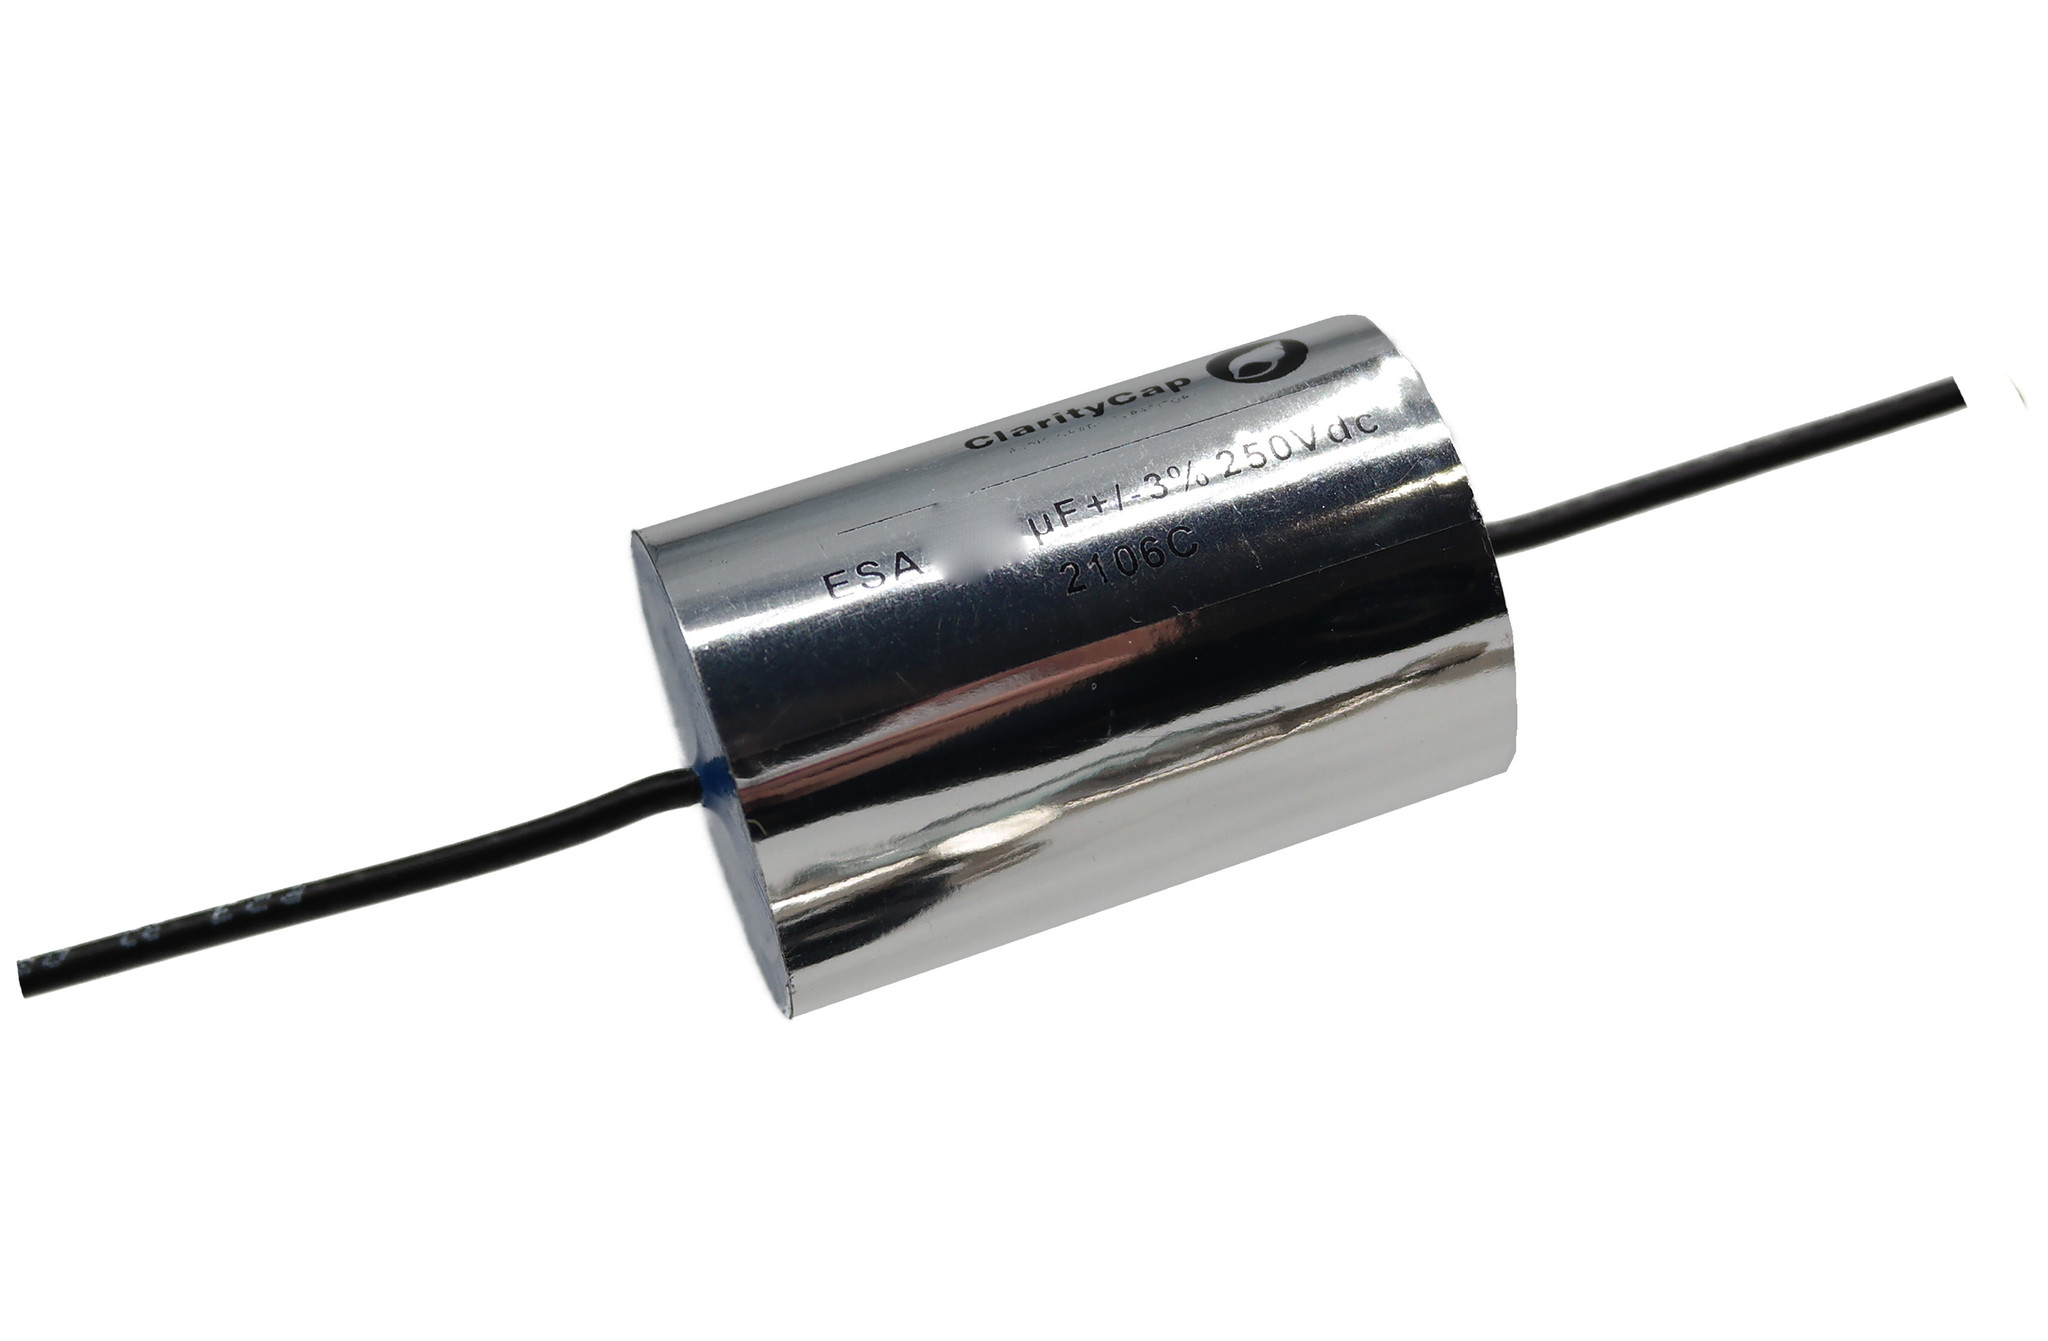 Condensatoare - Condensator film ClarityCap ESA33uH250Vdc | 33 µF | 3% | 250 V, audioclub.ro